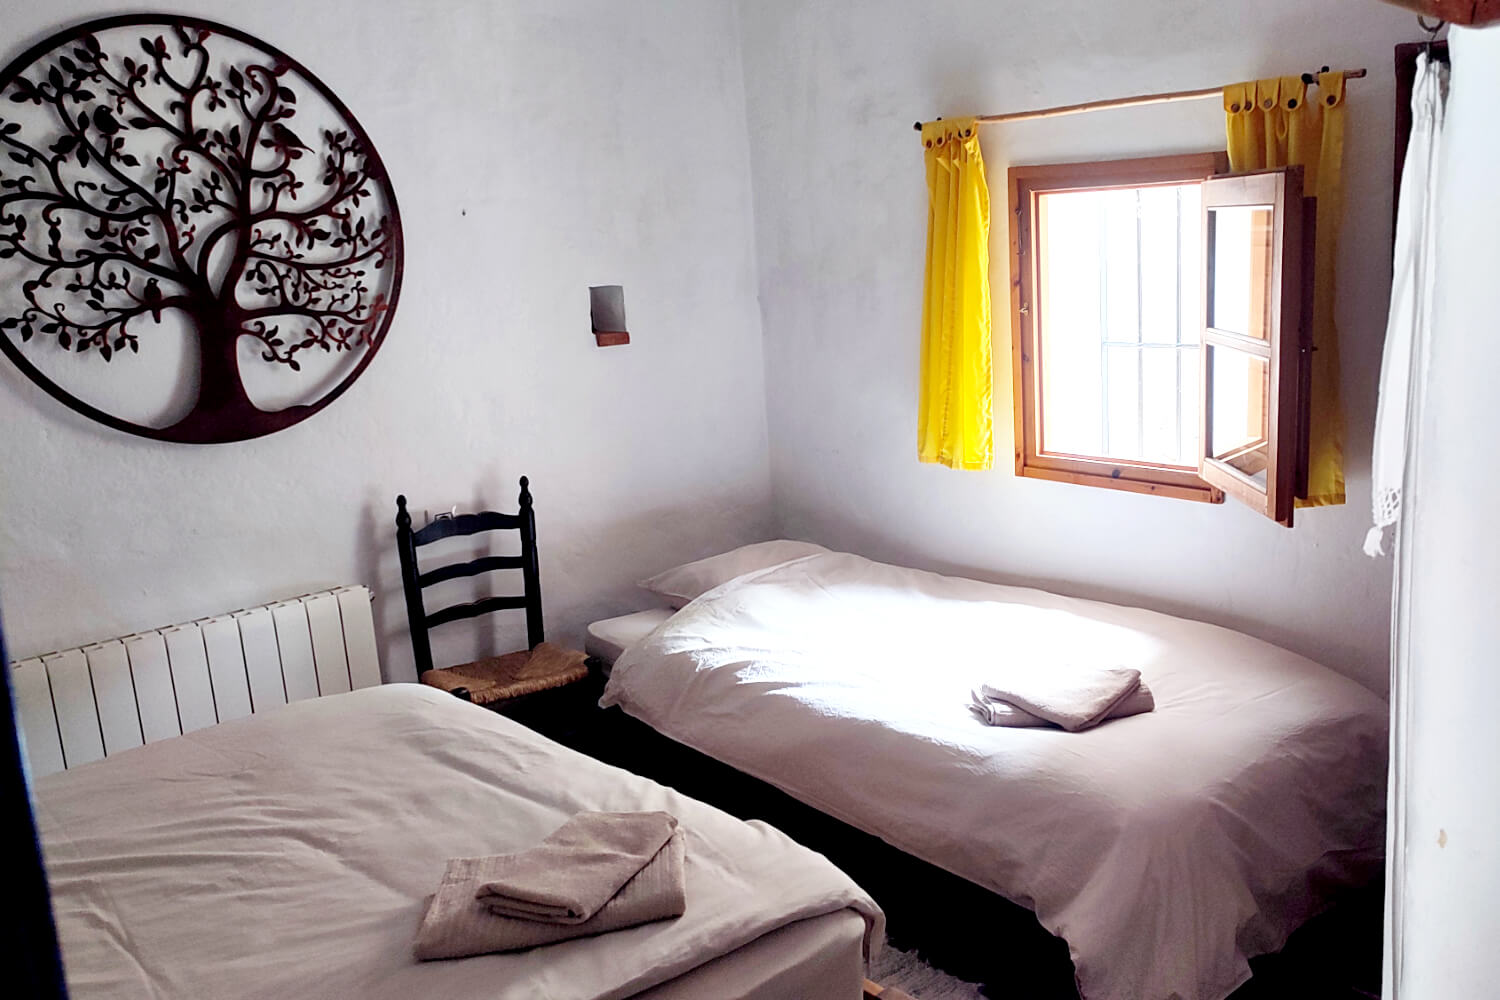 Gemeinschafts-Zweibettzimmer - mit 2 getrennten Betten und Gemeischaftsbad (+ € 240,- pro Person)